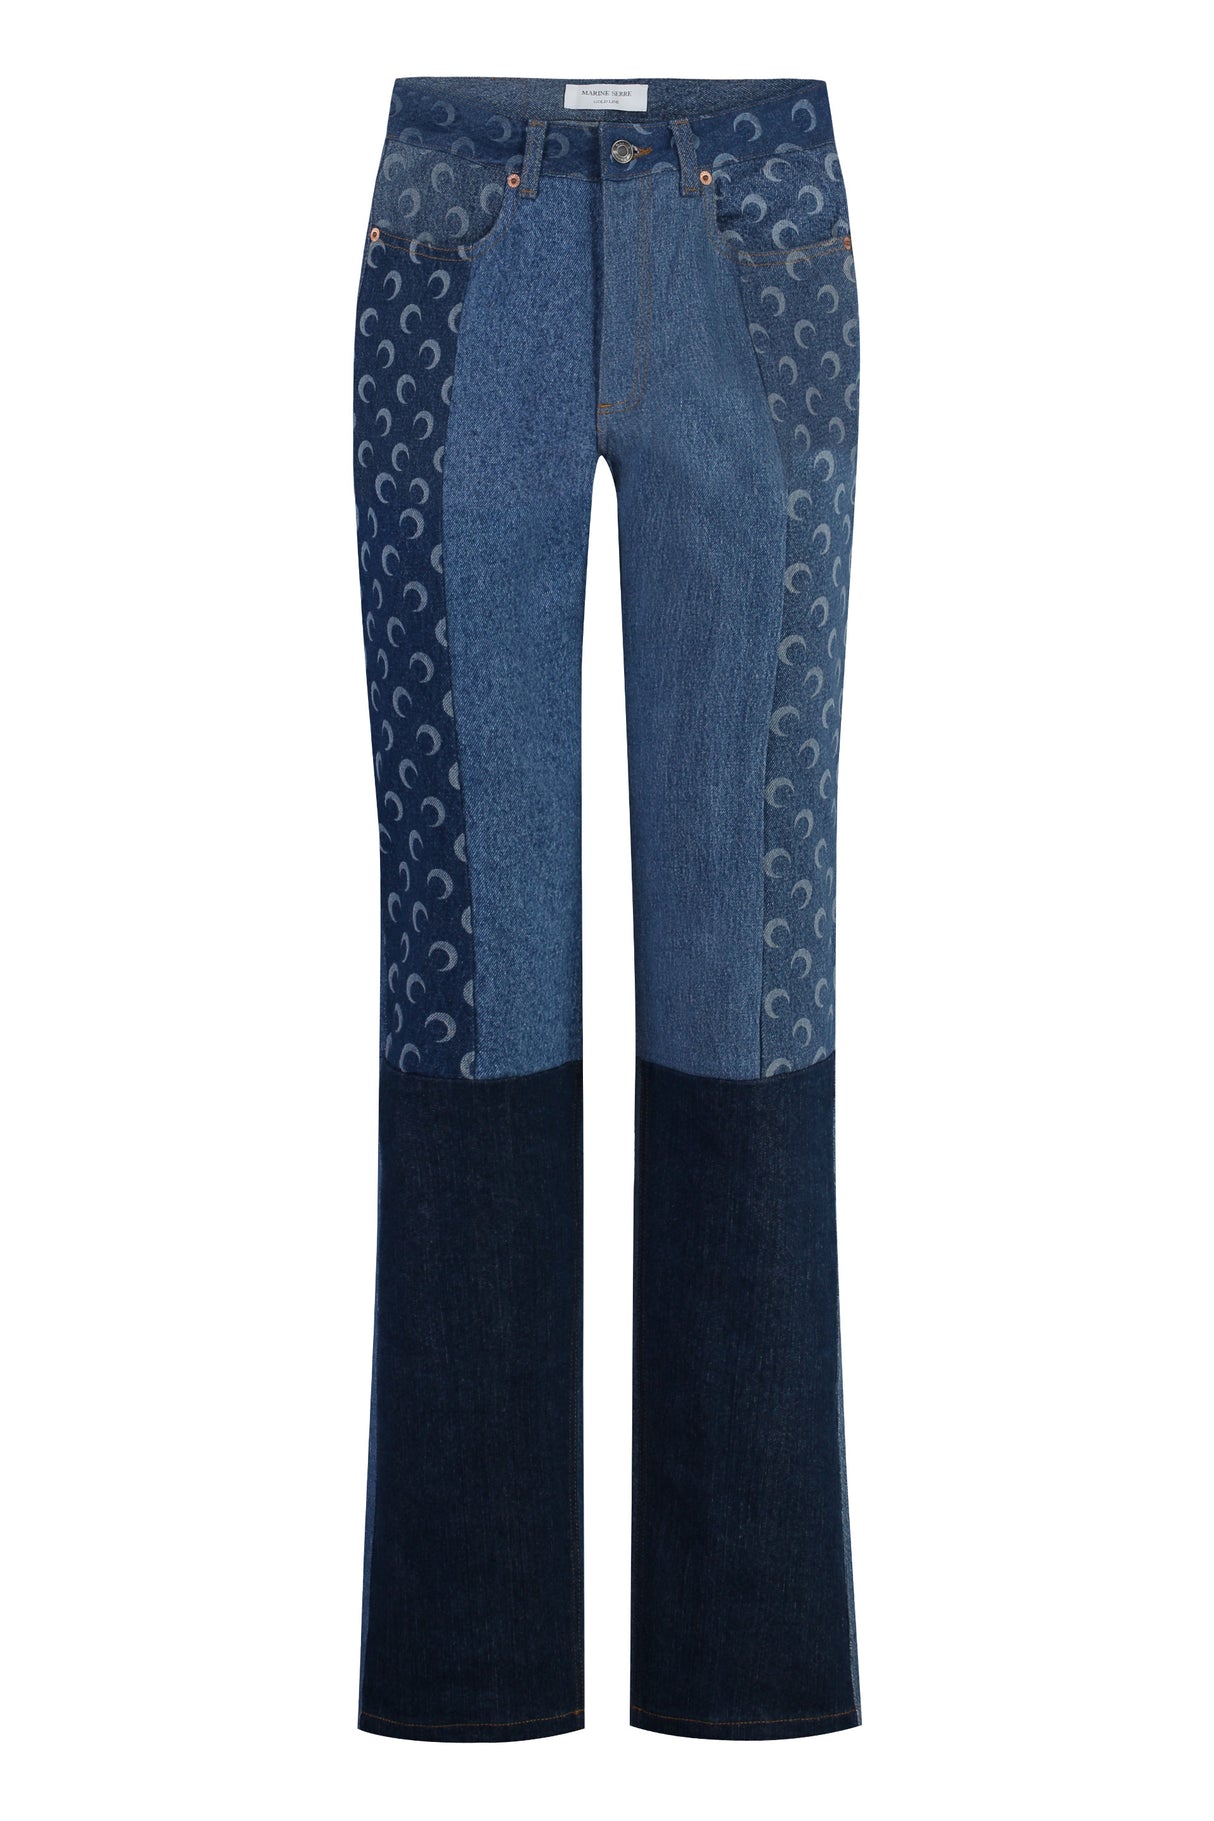 MARINE SERRE Blue Straight Leg Denim Jeans for Women - FW23